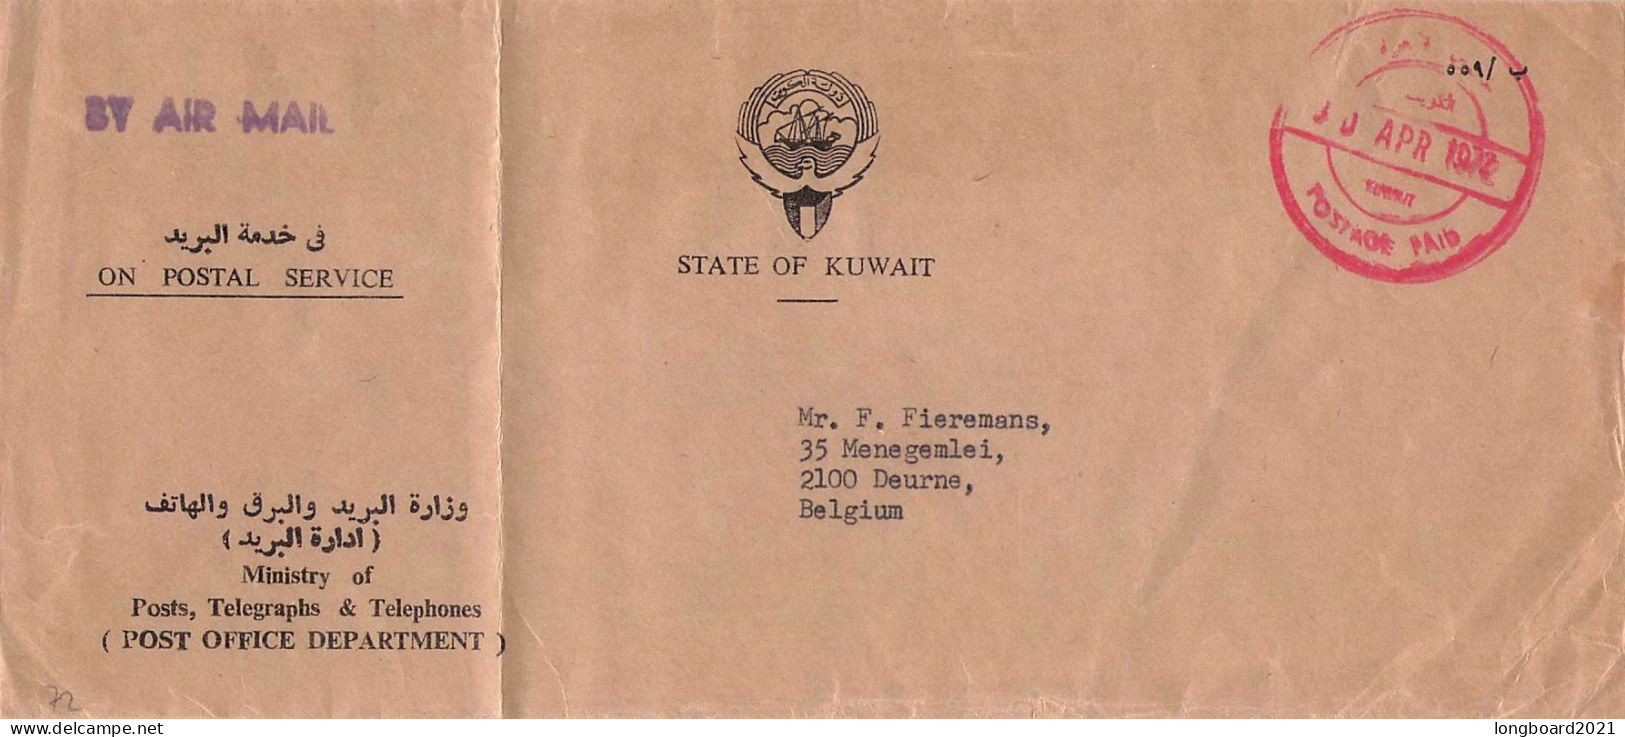 KUWAIT - ON POSTAL SERVICE 1972 - BELGIUM / 5131 - Kuwait